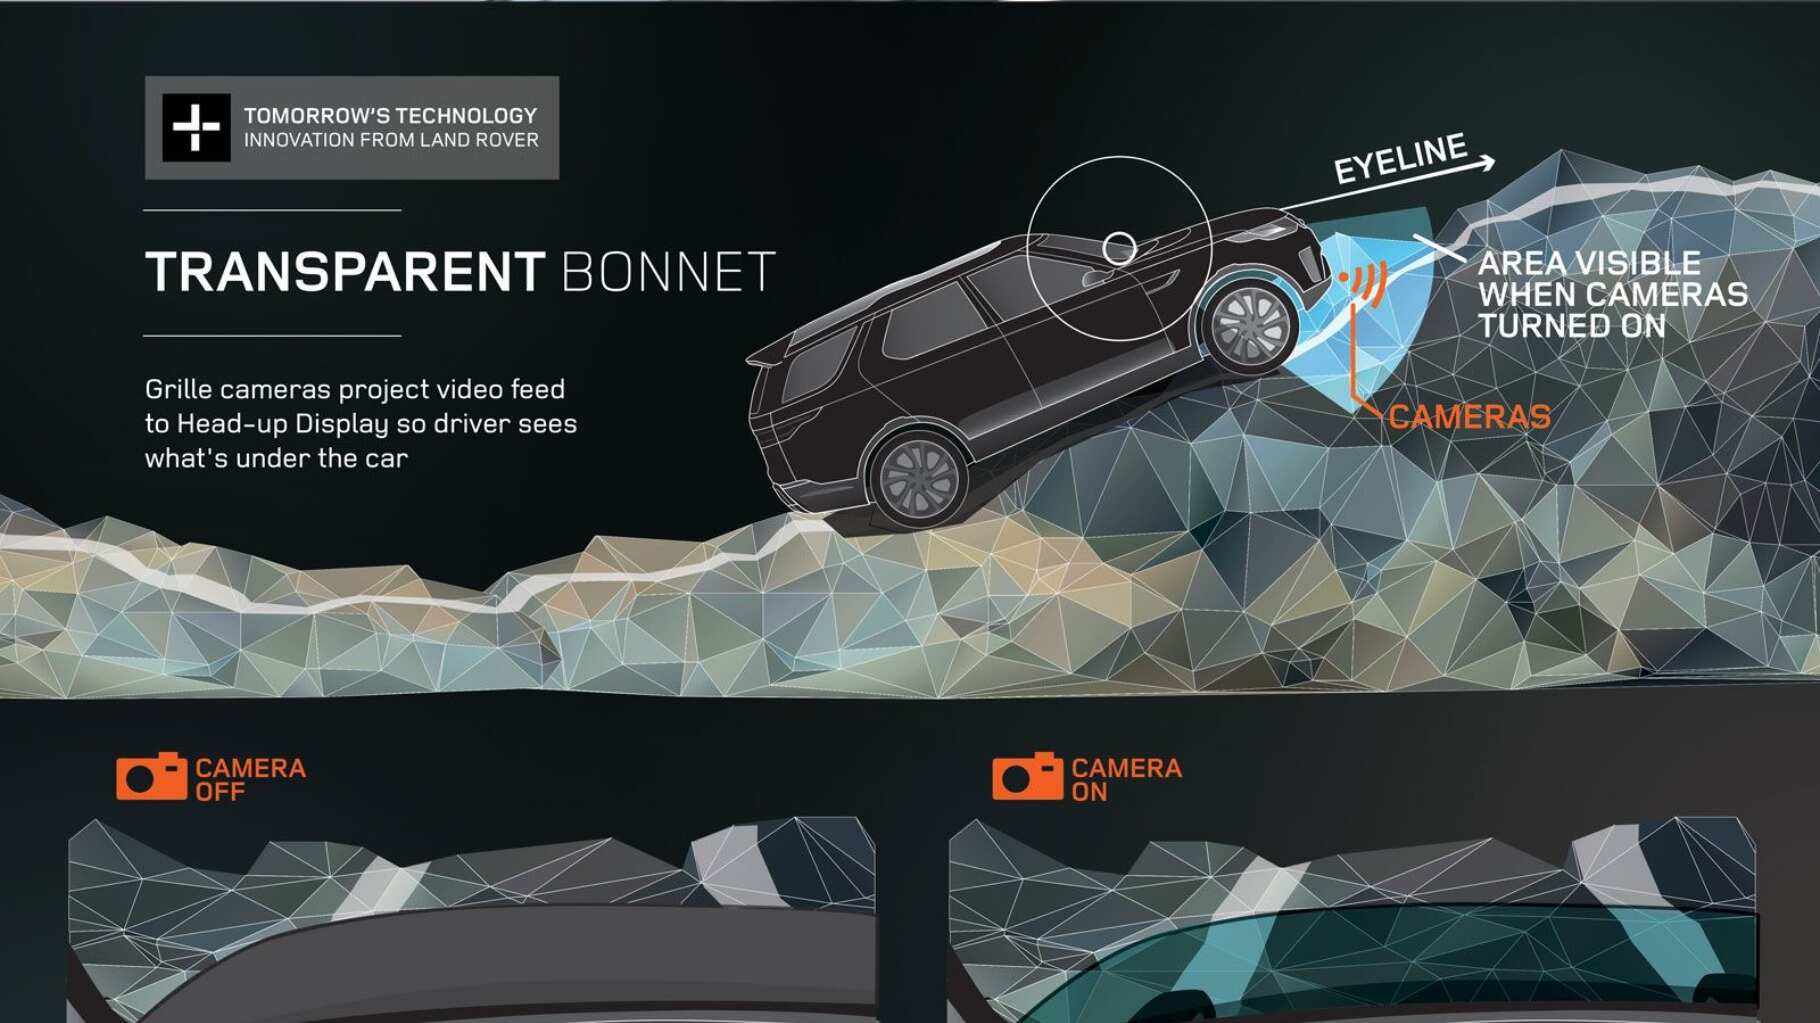 Link: Play video: Land Rover Reveals Transparent Bonnet Concept